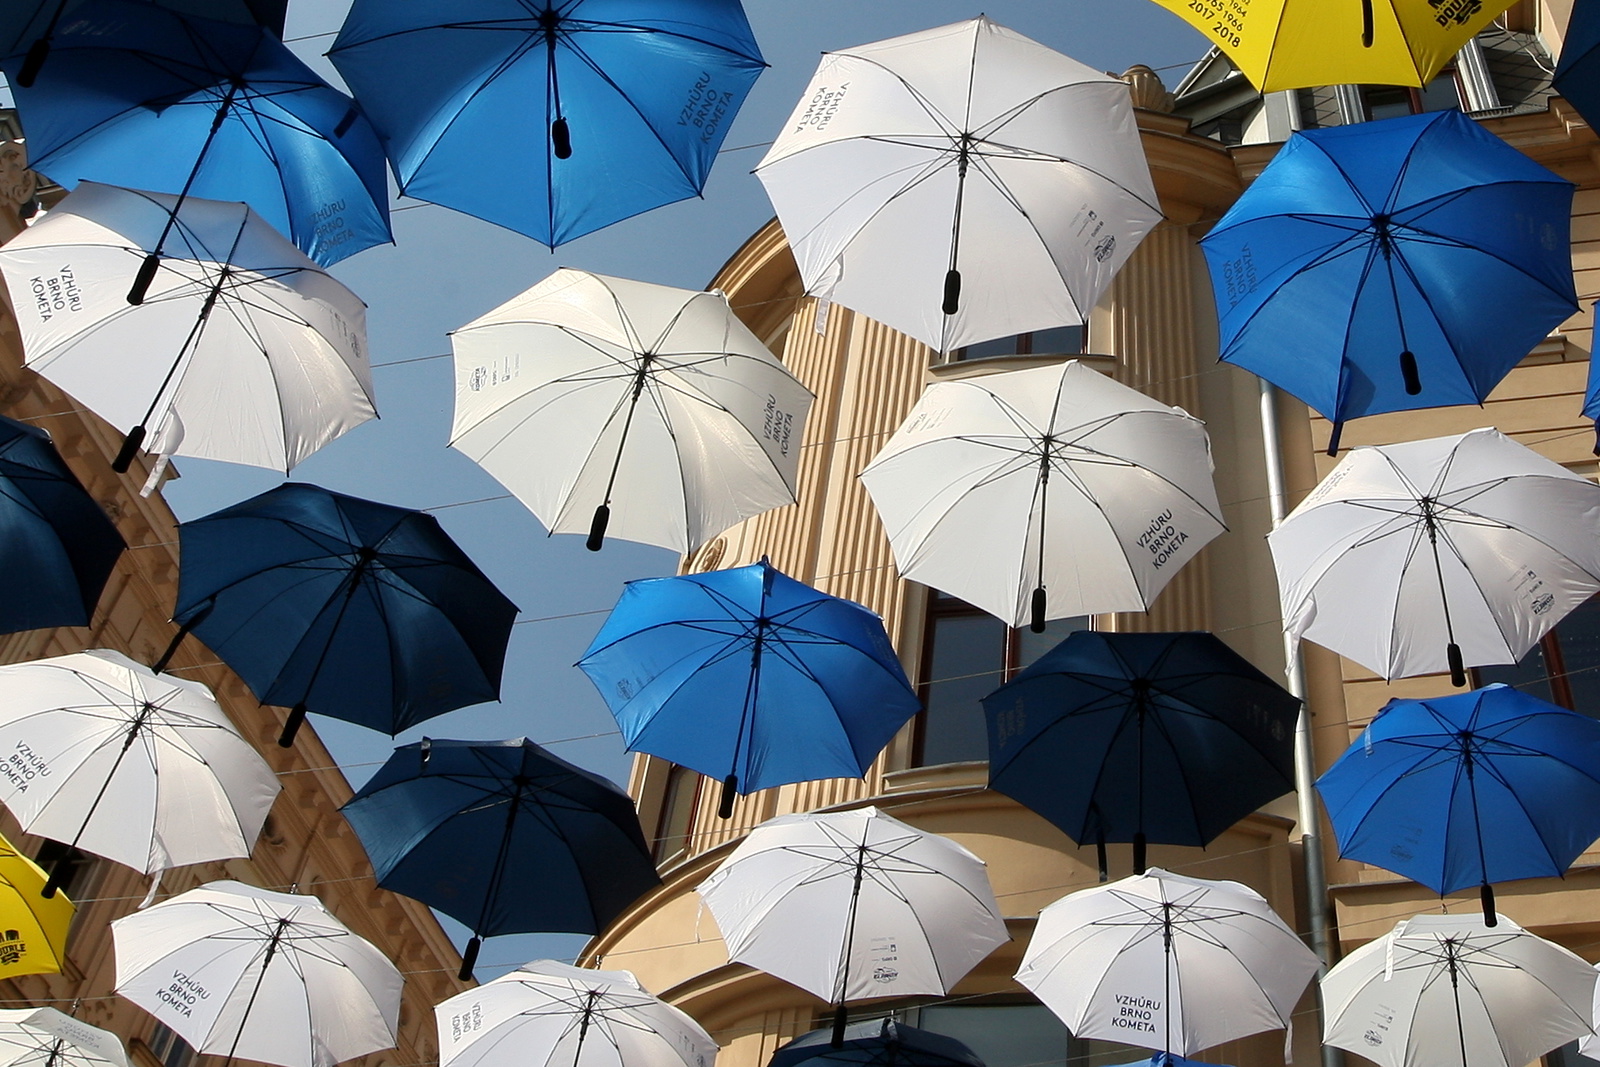 Českou ulici stíní stovky deštníků. Včetně třinácti žlutých jako titulů  Komety - Brněnský deník